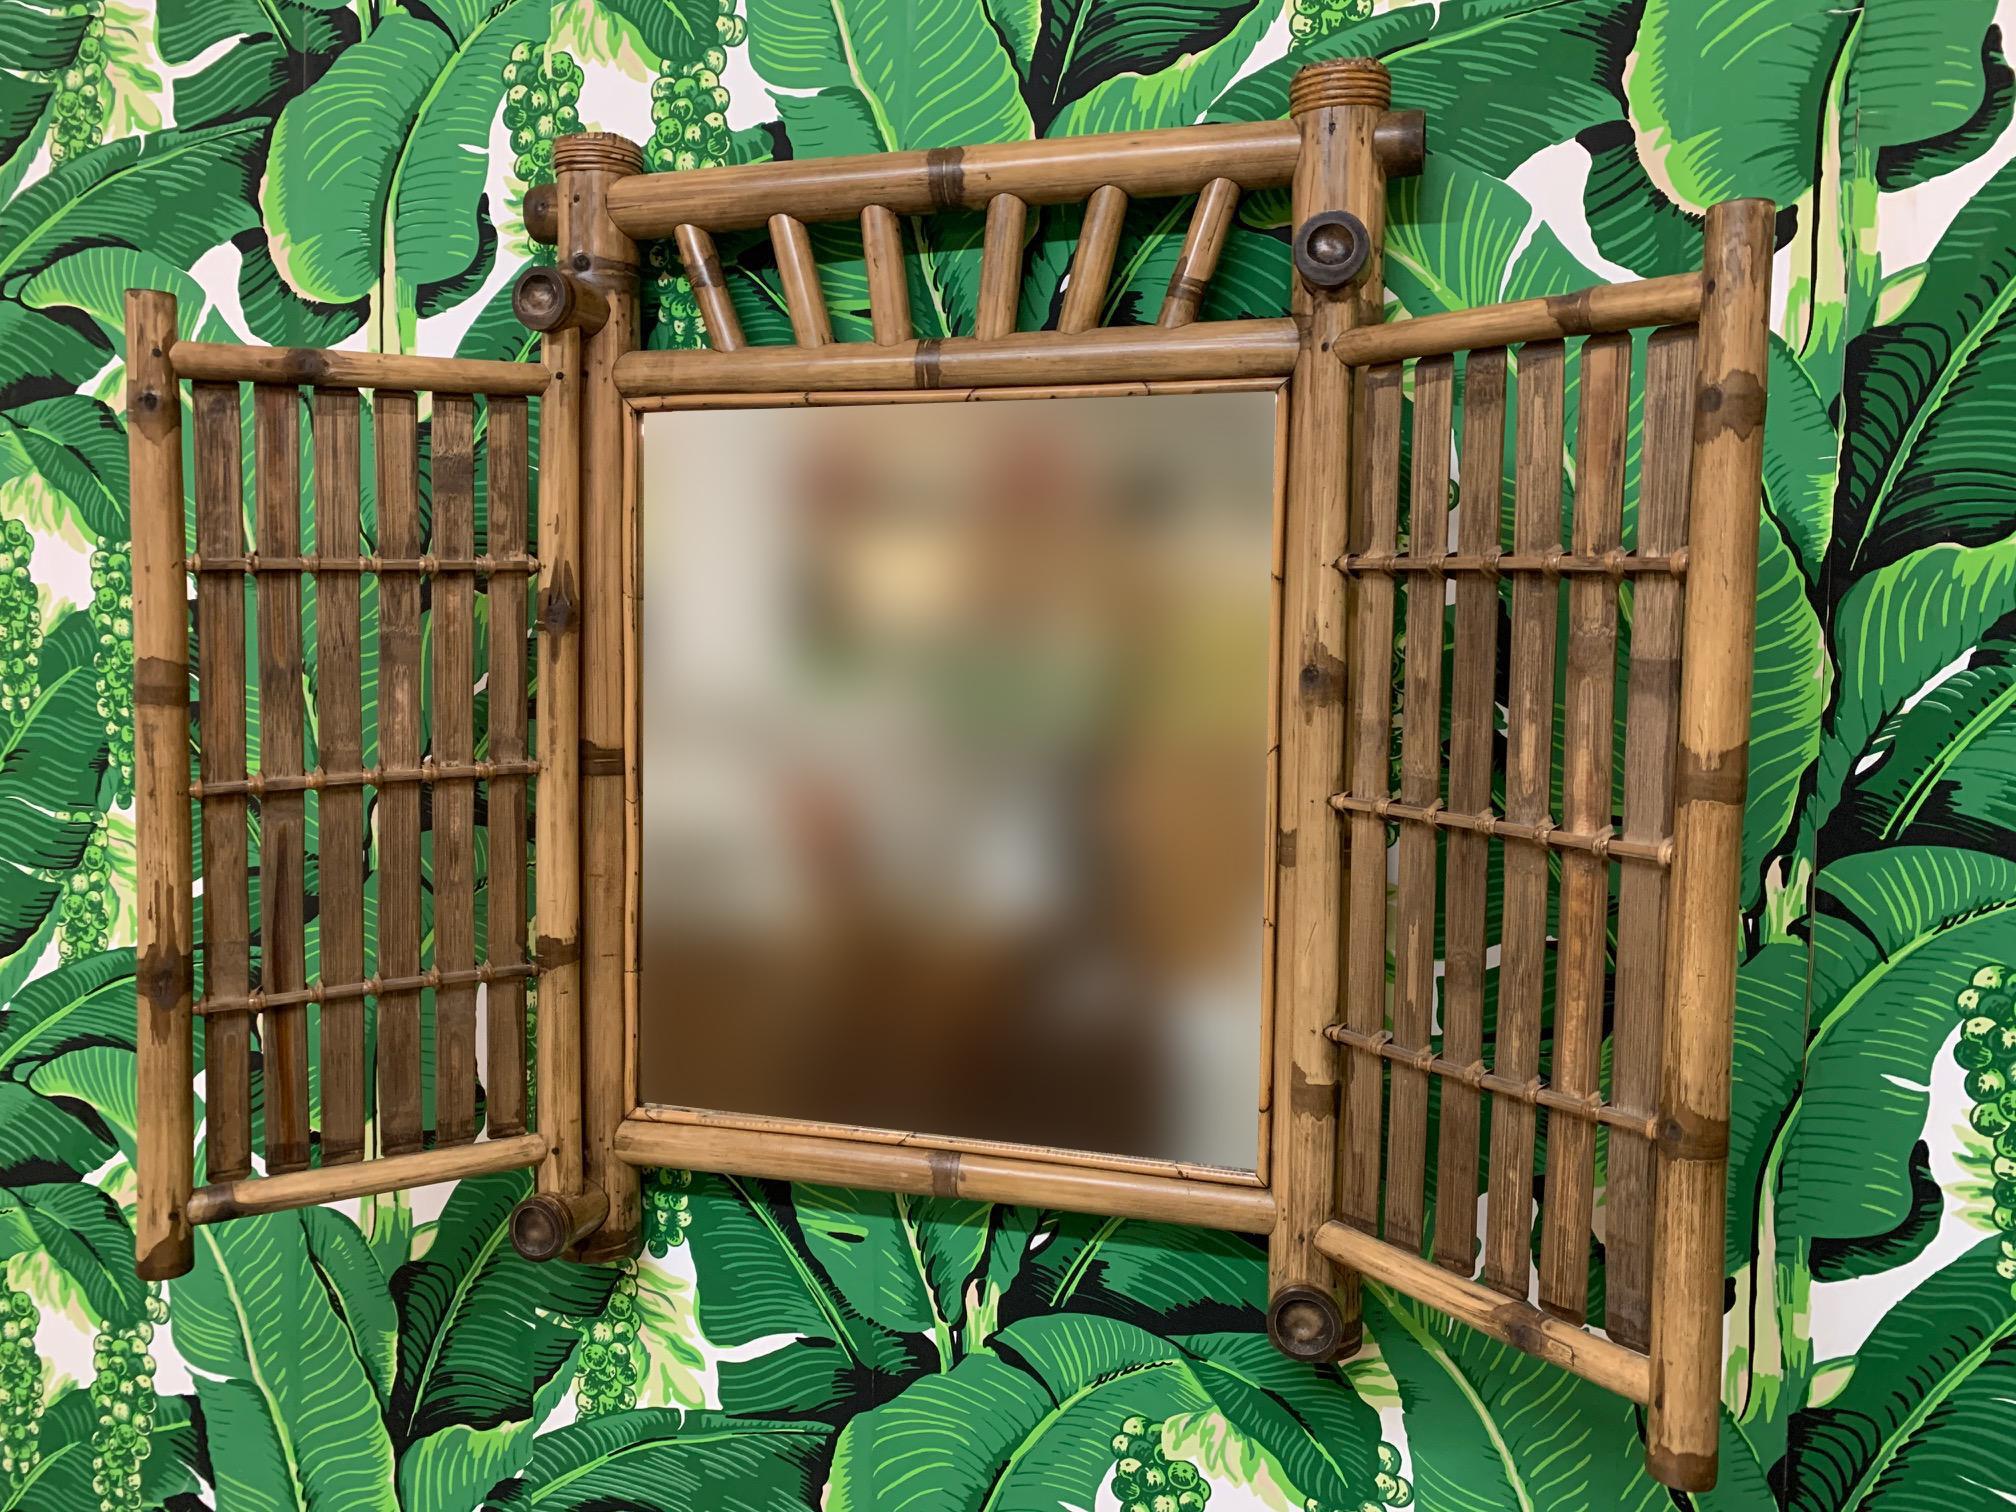 Ce miroir en bambou et rotin de style Tiki est doté d'une double porte qui peut se refermer pour cacher le miroir. Le miroir peut être fixé au mur ou posé sur une commode ou un bureau comme miroir de courtoisie. Une façon parfaite d'ajouter un peu